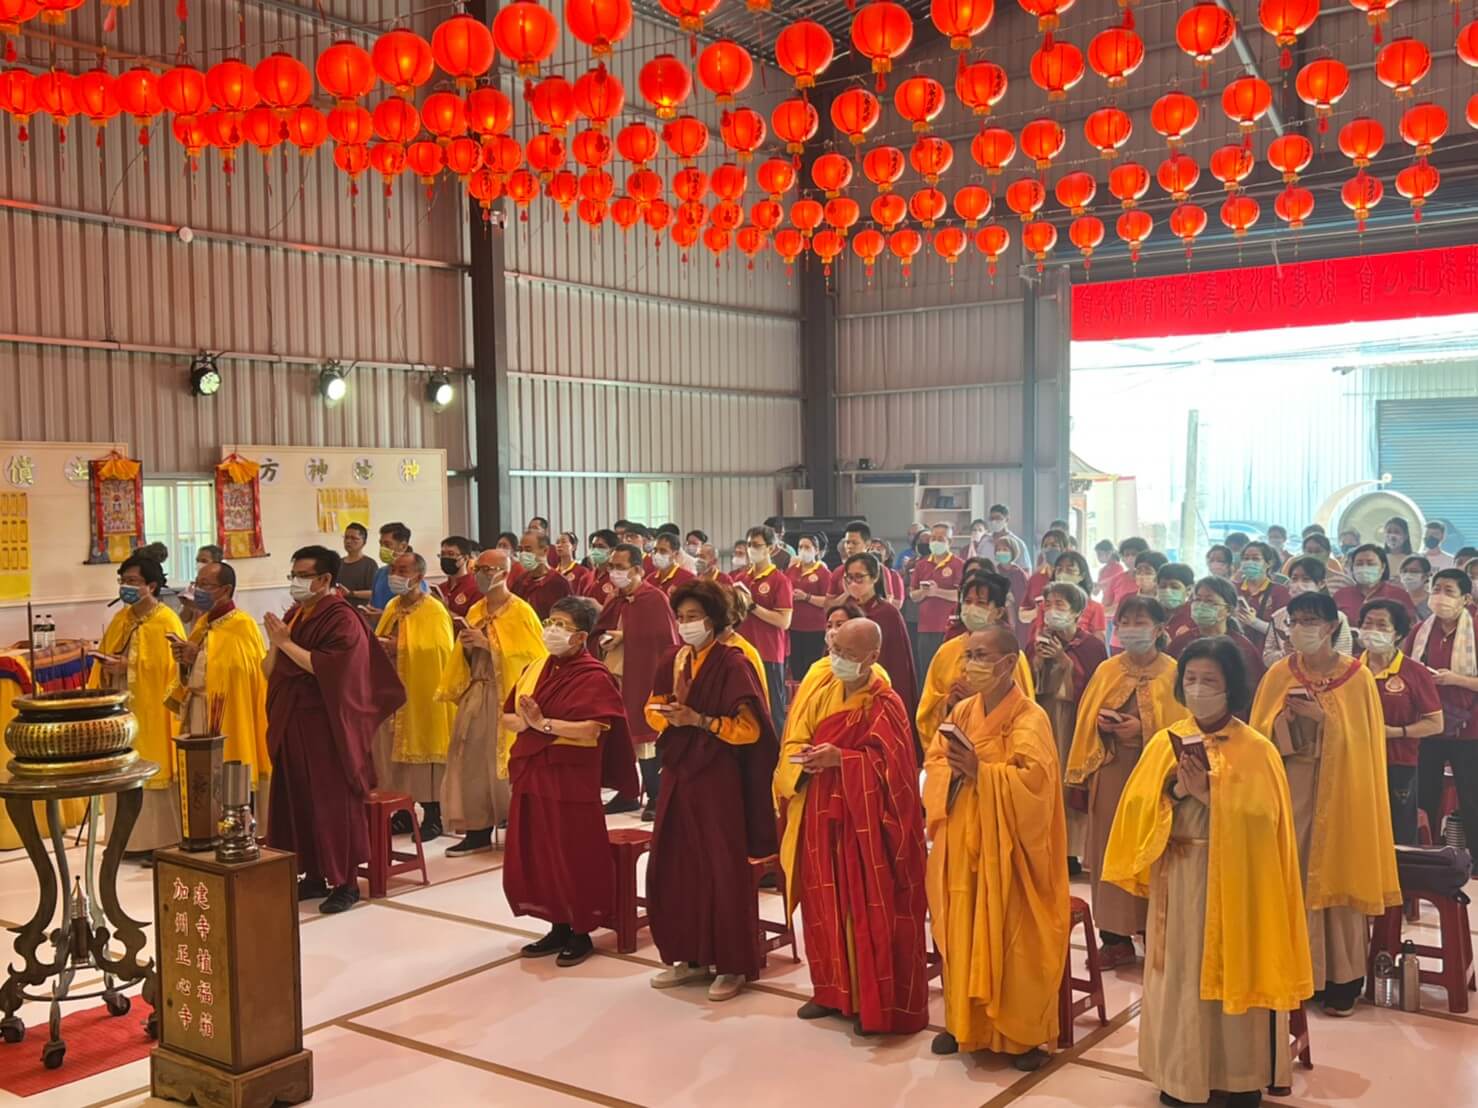 佛教正心會於金龜山啟建 恭祝南無第三世多杰羌佛佛誕暨護生法會 ，來自全國各地的信眾虔誠誦經祈福